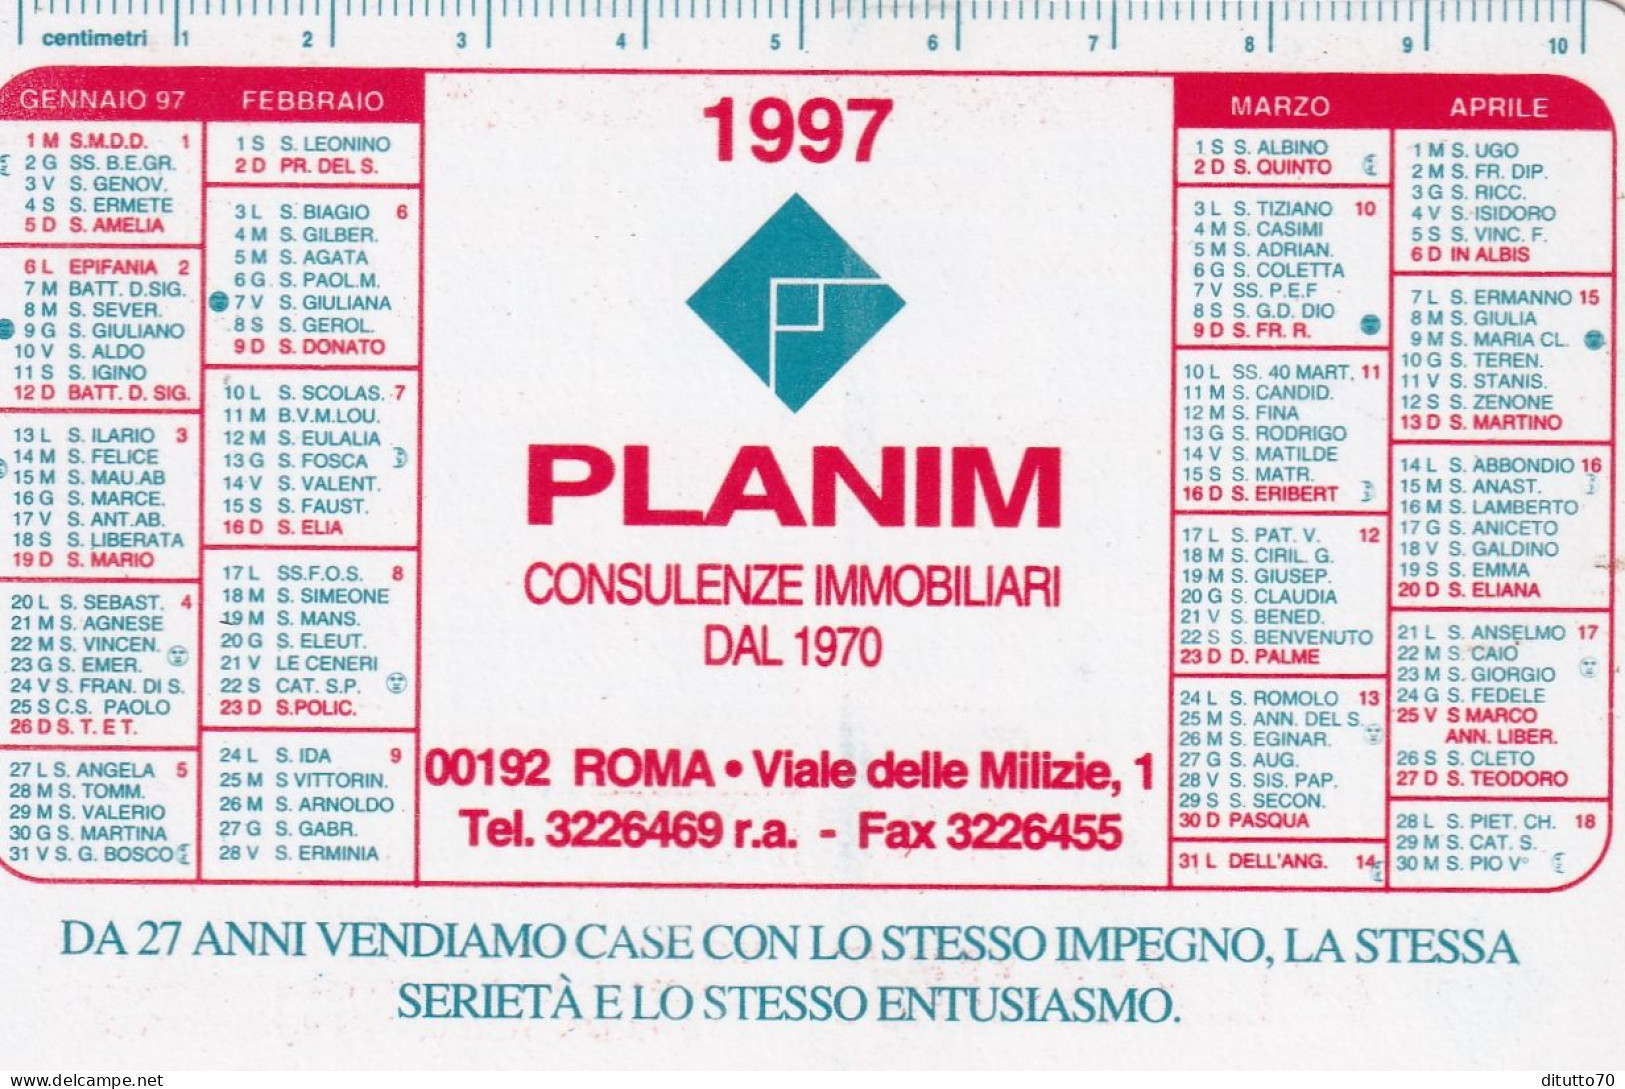 Calendarietto - Planim - Consulenza Immobiliari - Roma - Anno 1997 - Klein Formaat: 1991-00